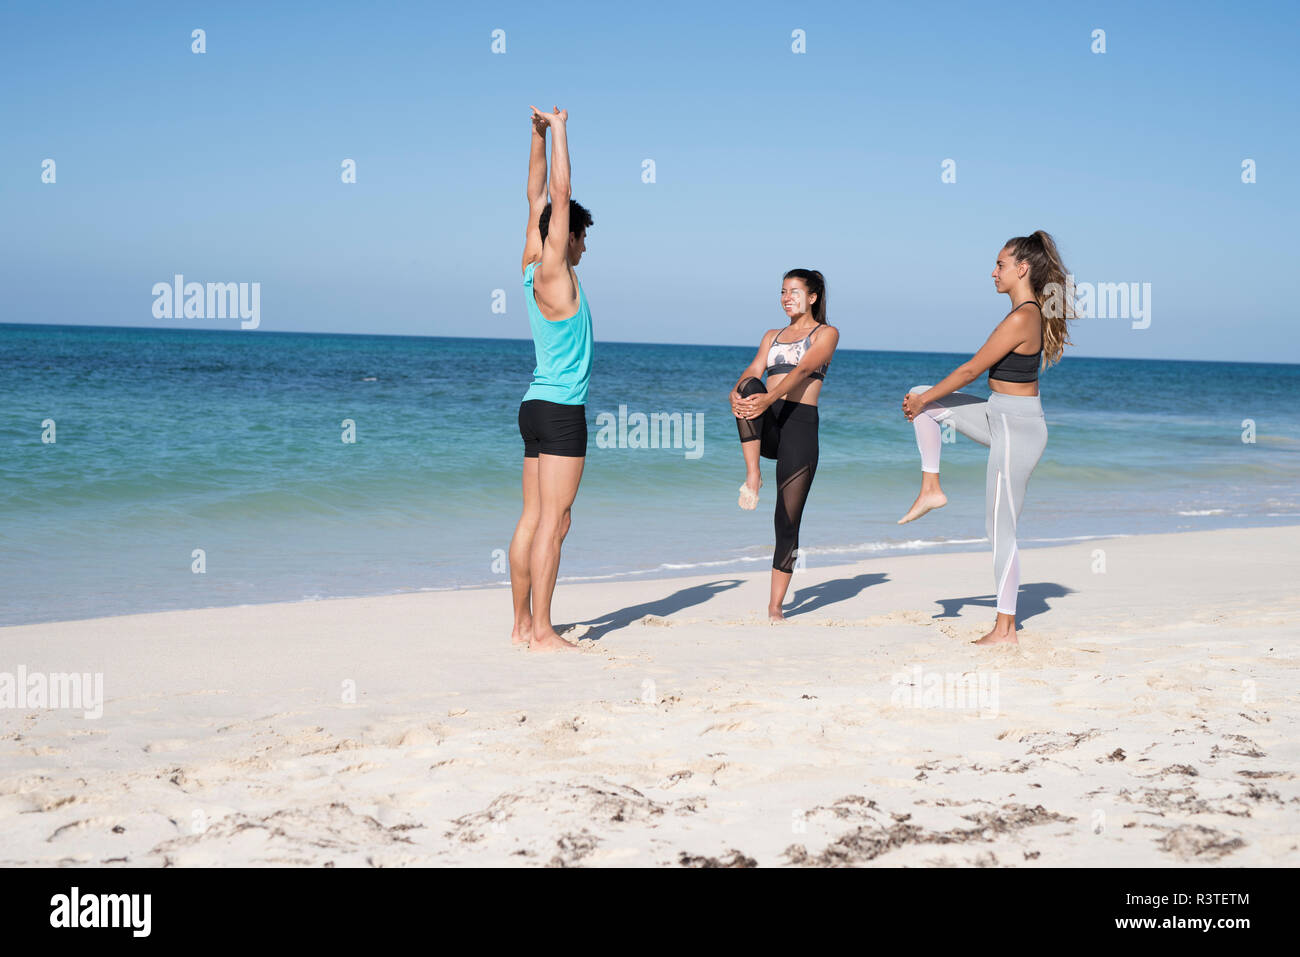 Spanien, Kanarische Inseln, Fuerteventura, zwei junge Frauen und ein junger Mann am Strand trainieren Stockfoto